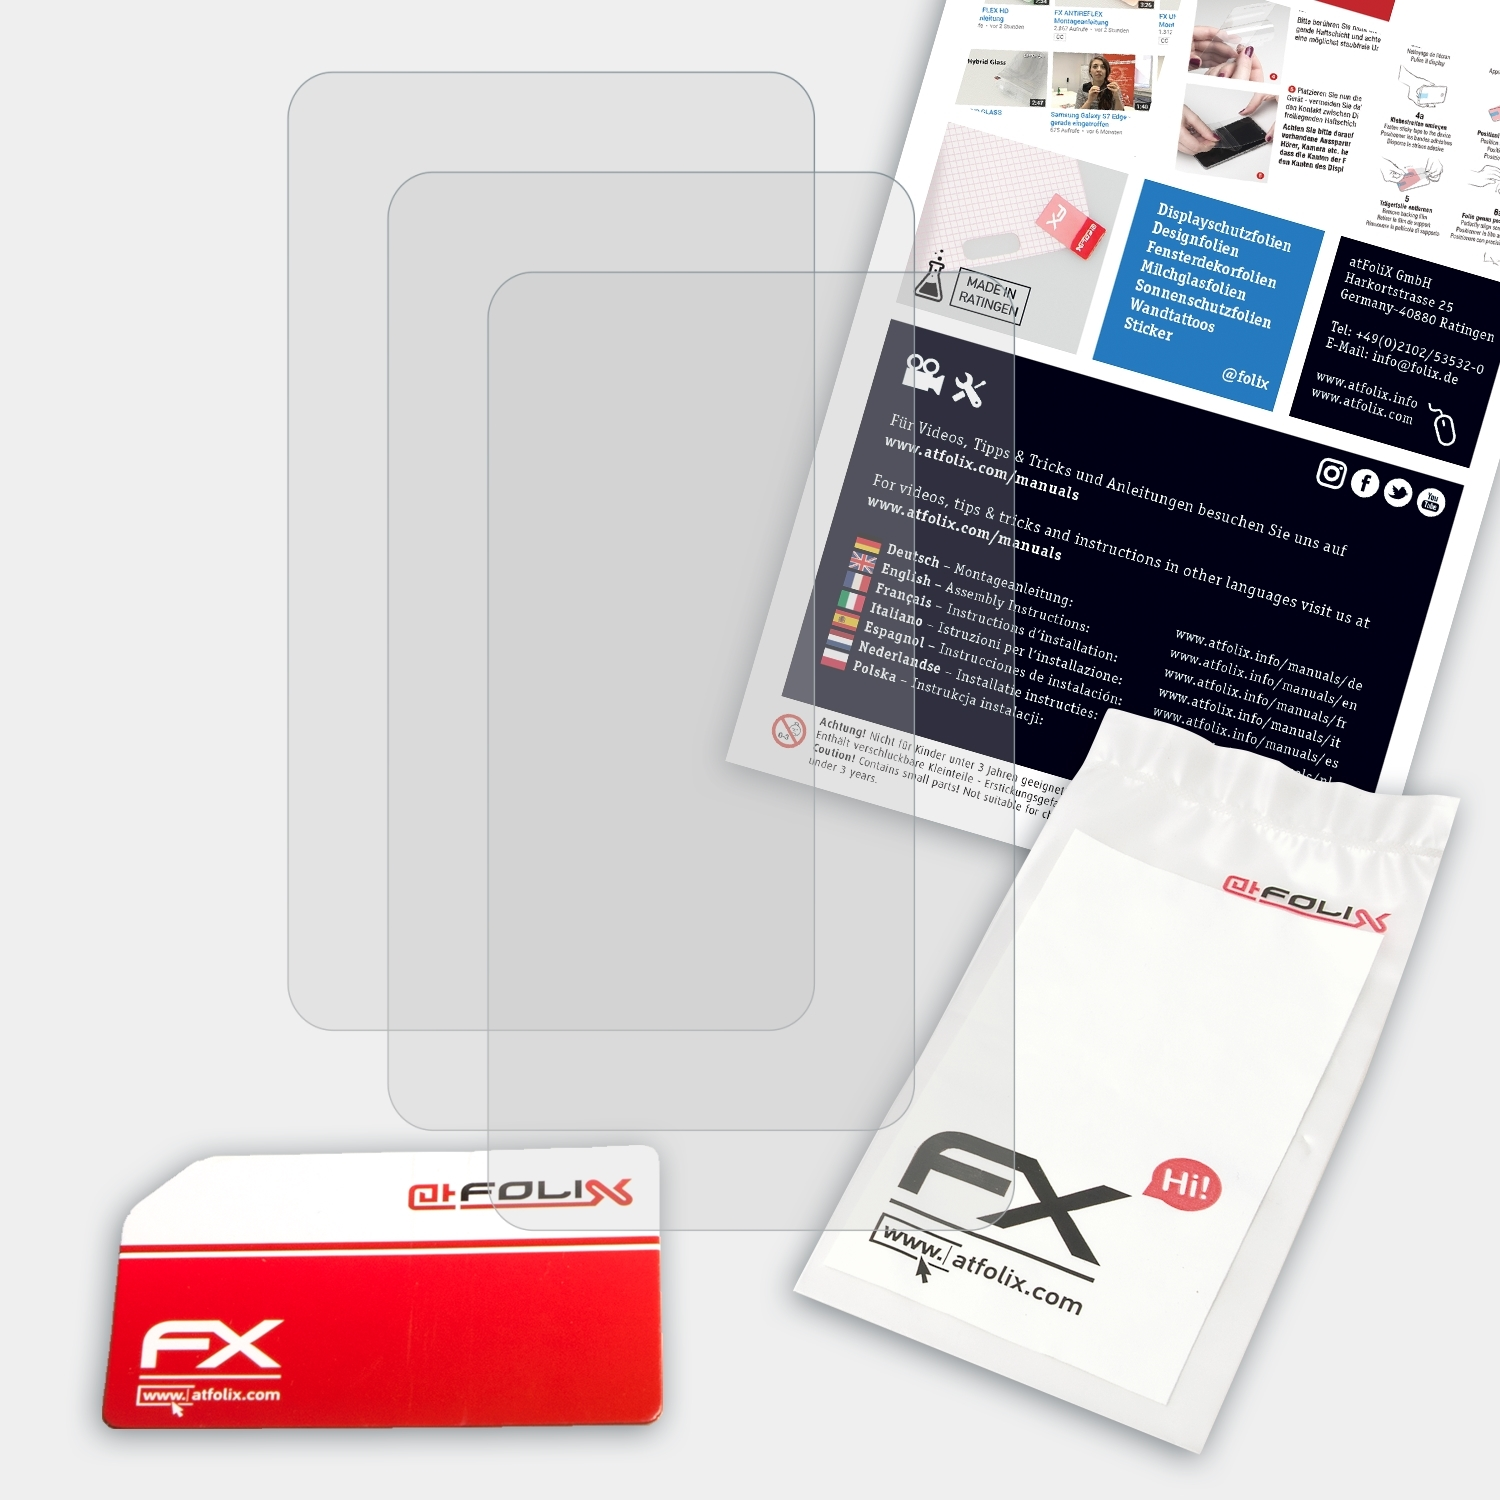 ATFOLIX 3x Displayschutz(für FX-Antireflex Colorado Garmin 300)